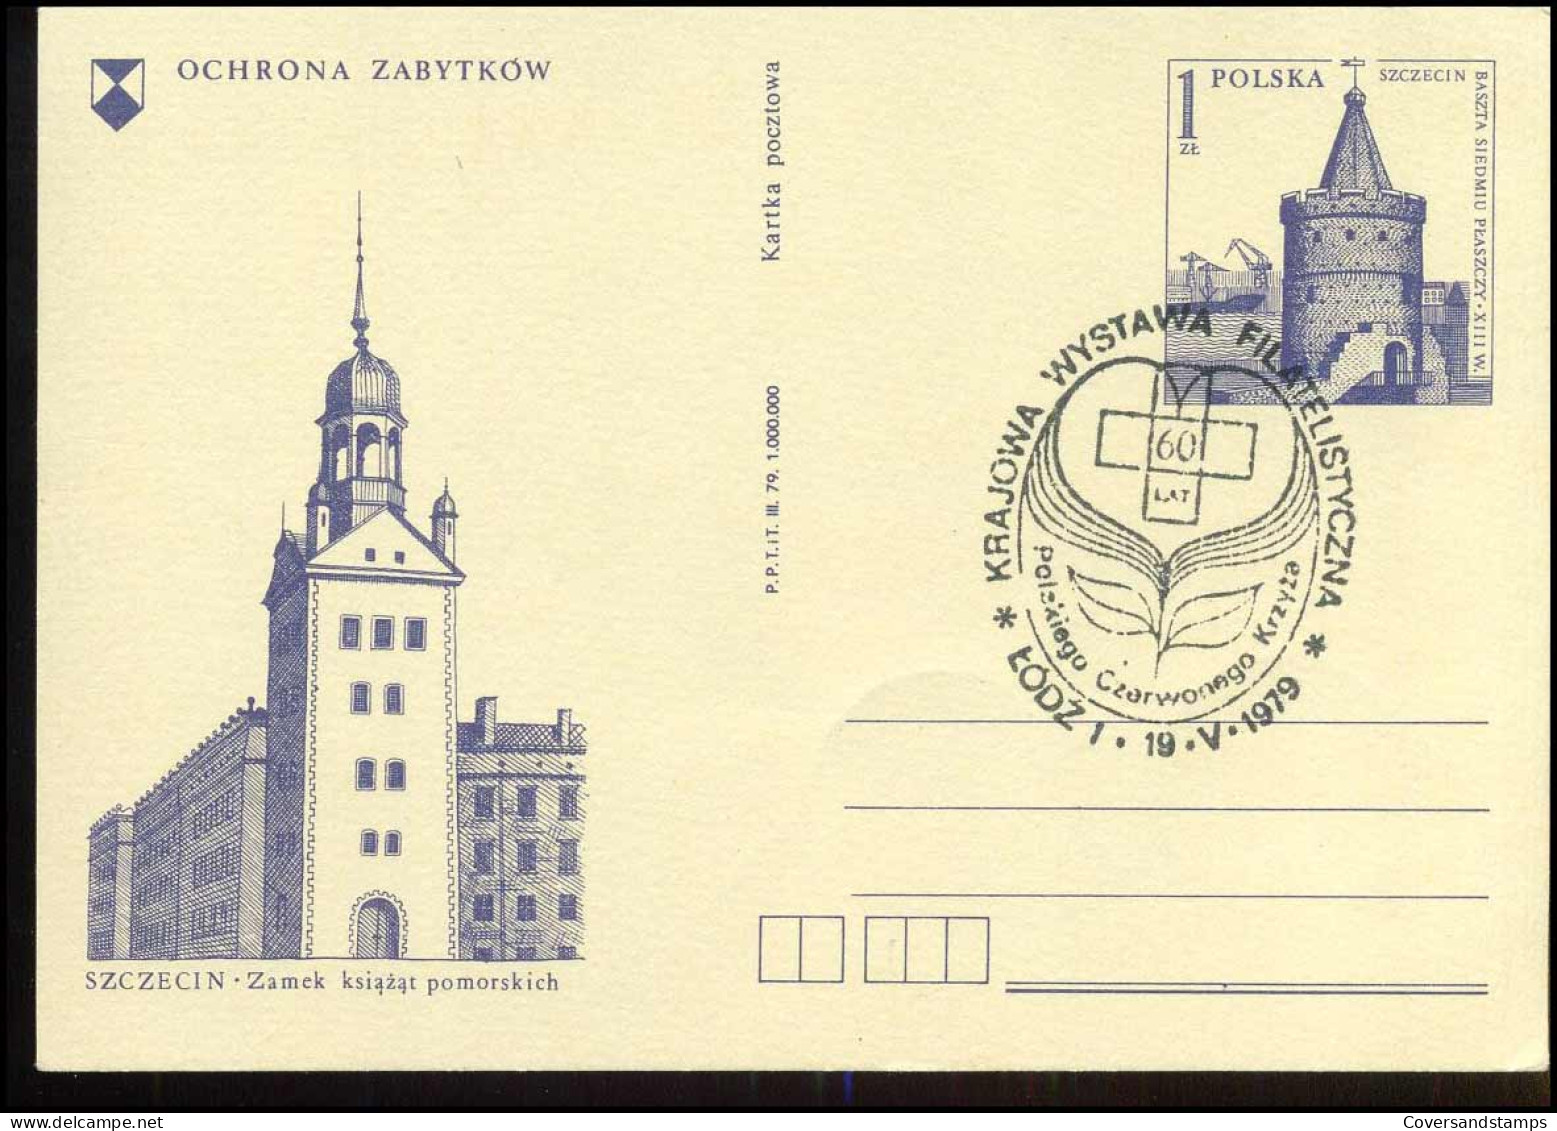 Post Card - Ochrona Zabytkow - Enteros Postales